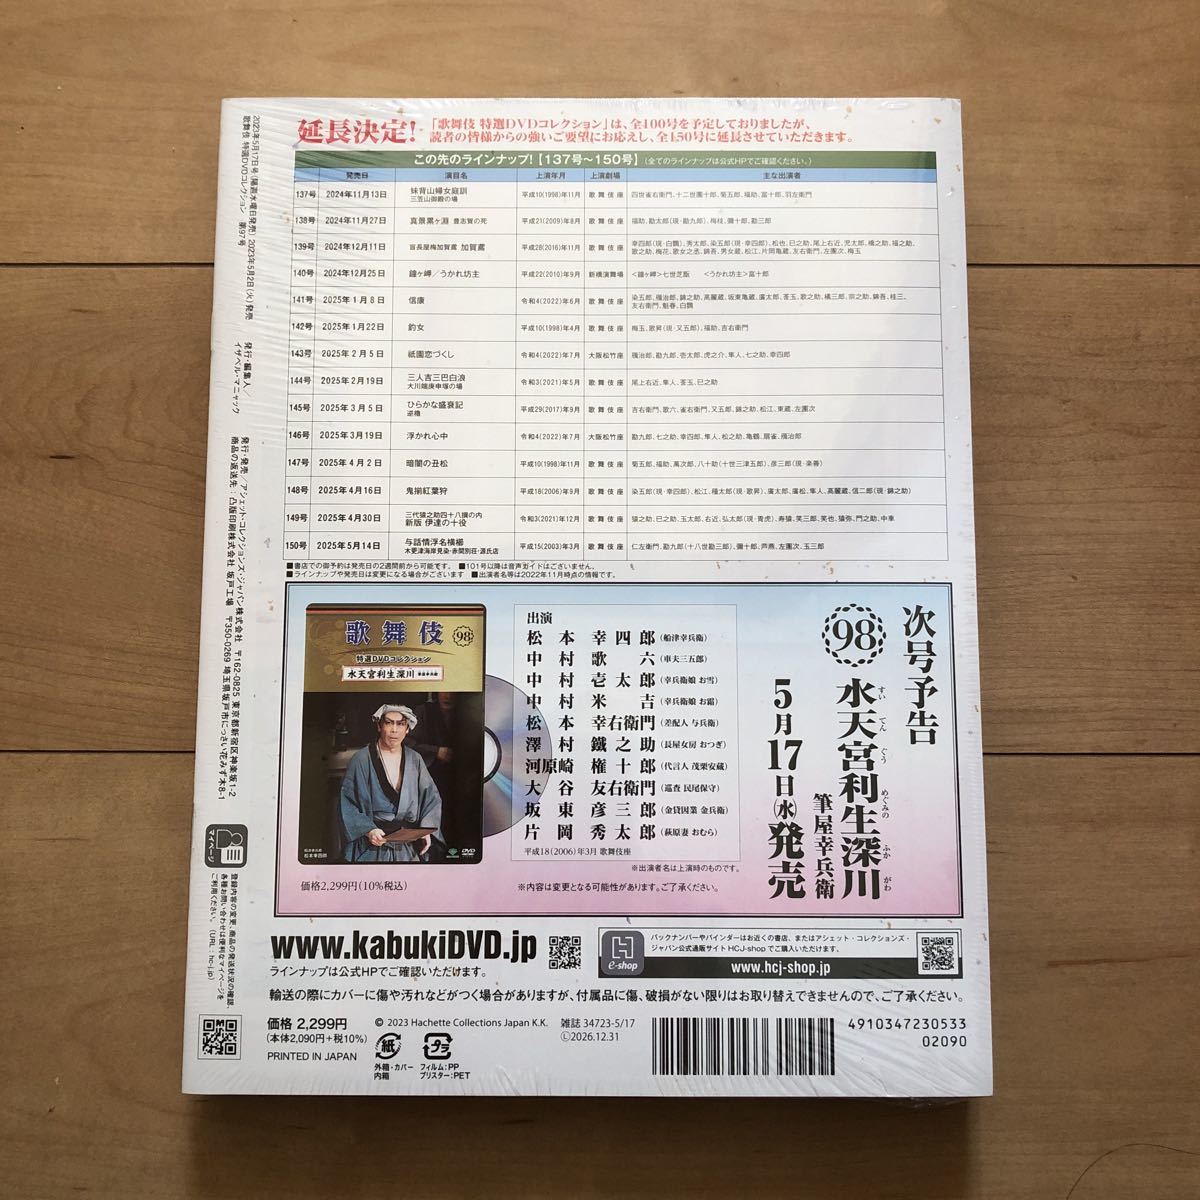  kabuki специальный отбор DVD коллекция 97.. san .. san одна сторона холм . левый .. склон восток шар Saburou 